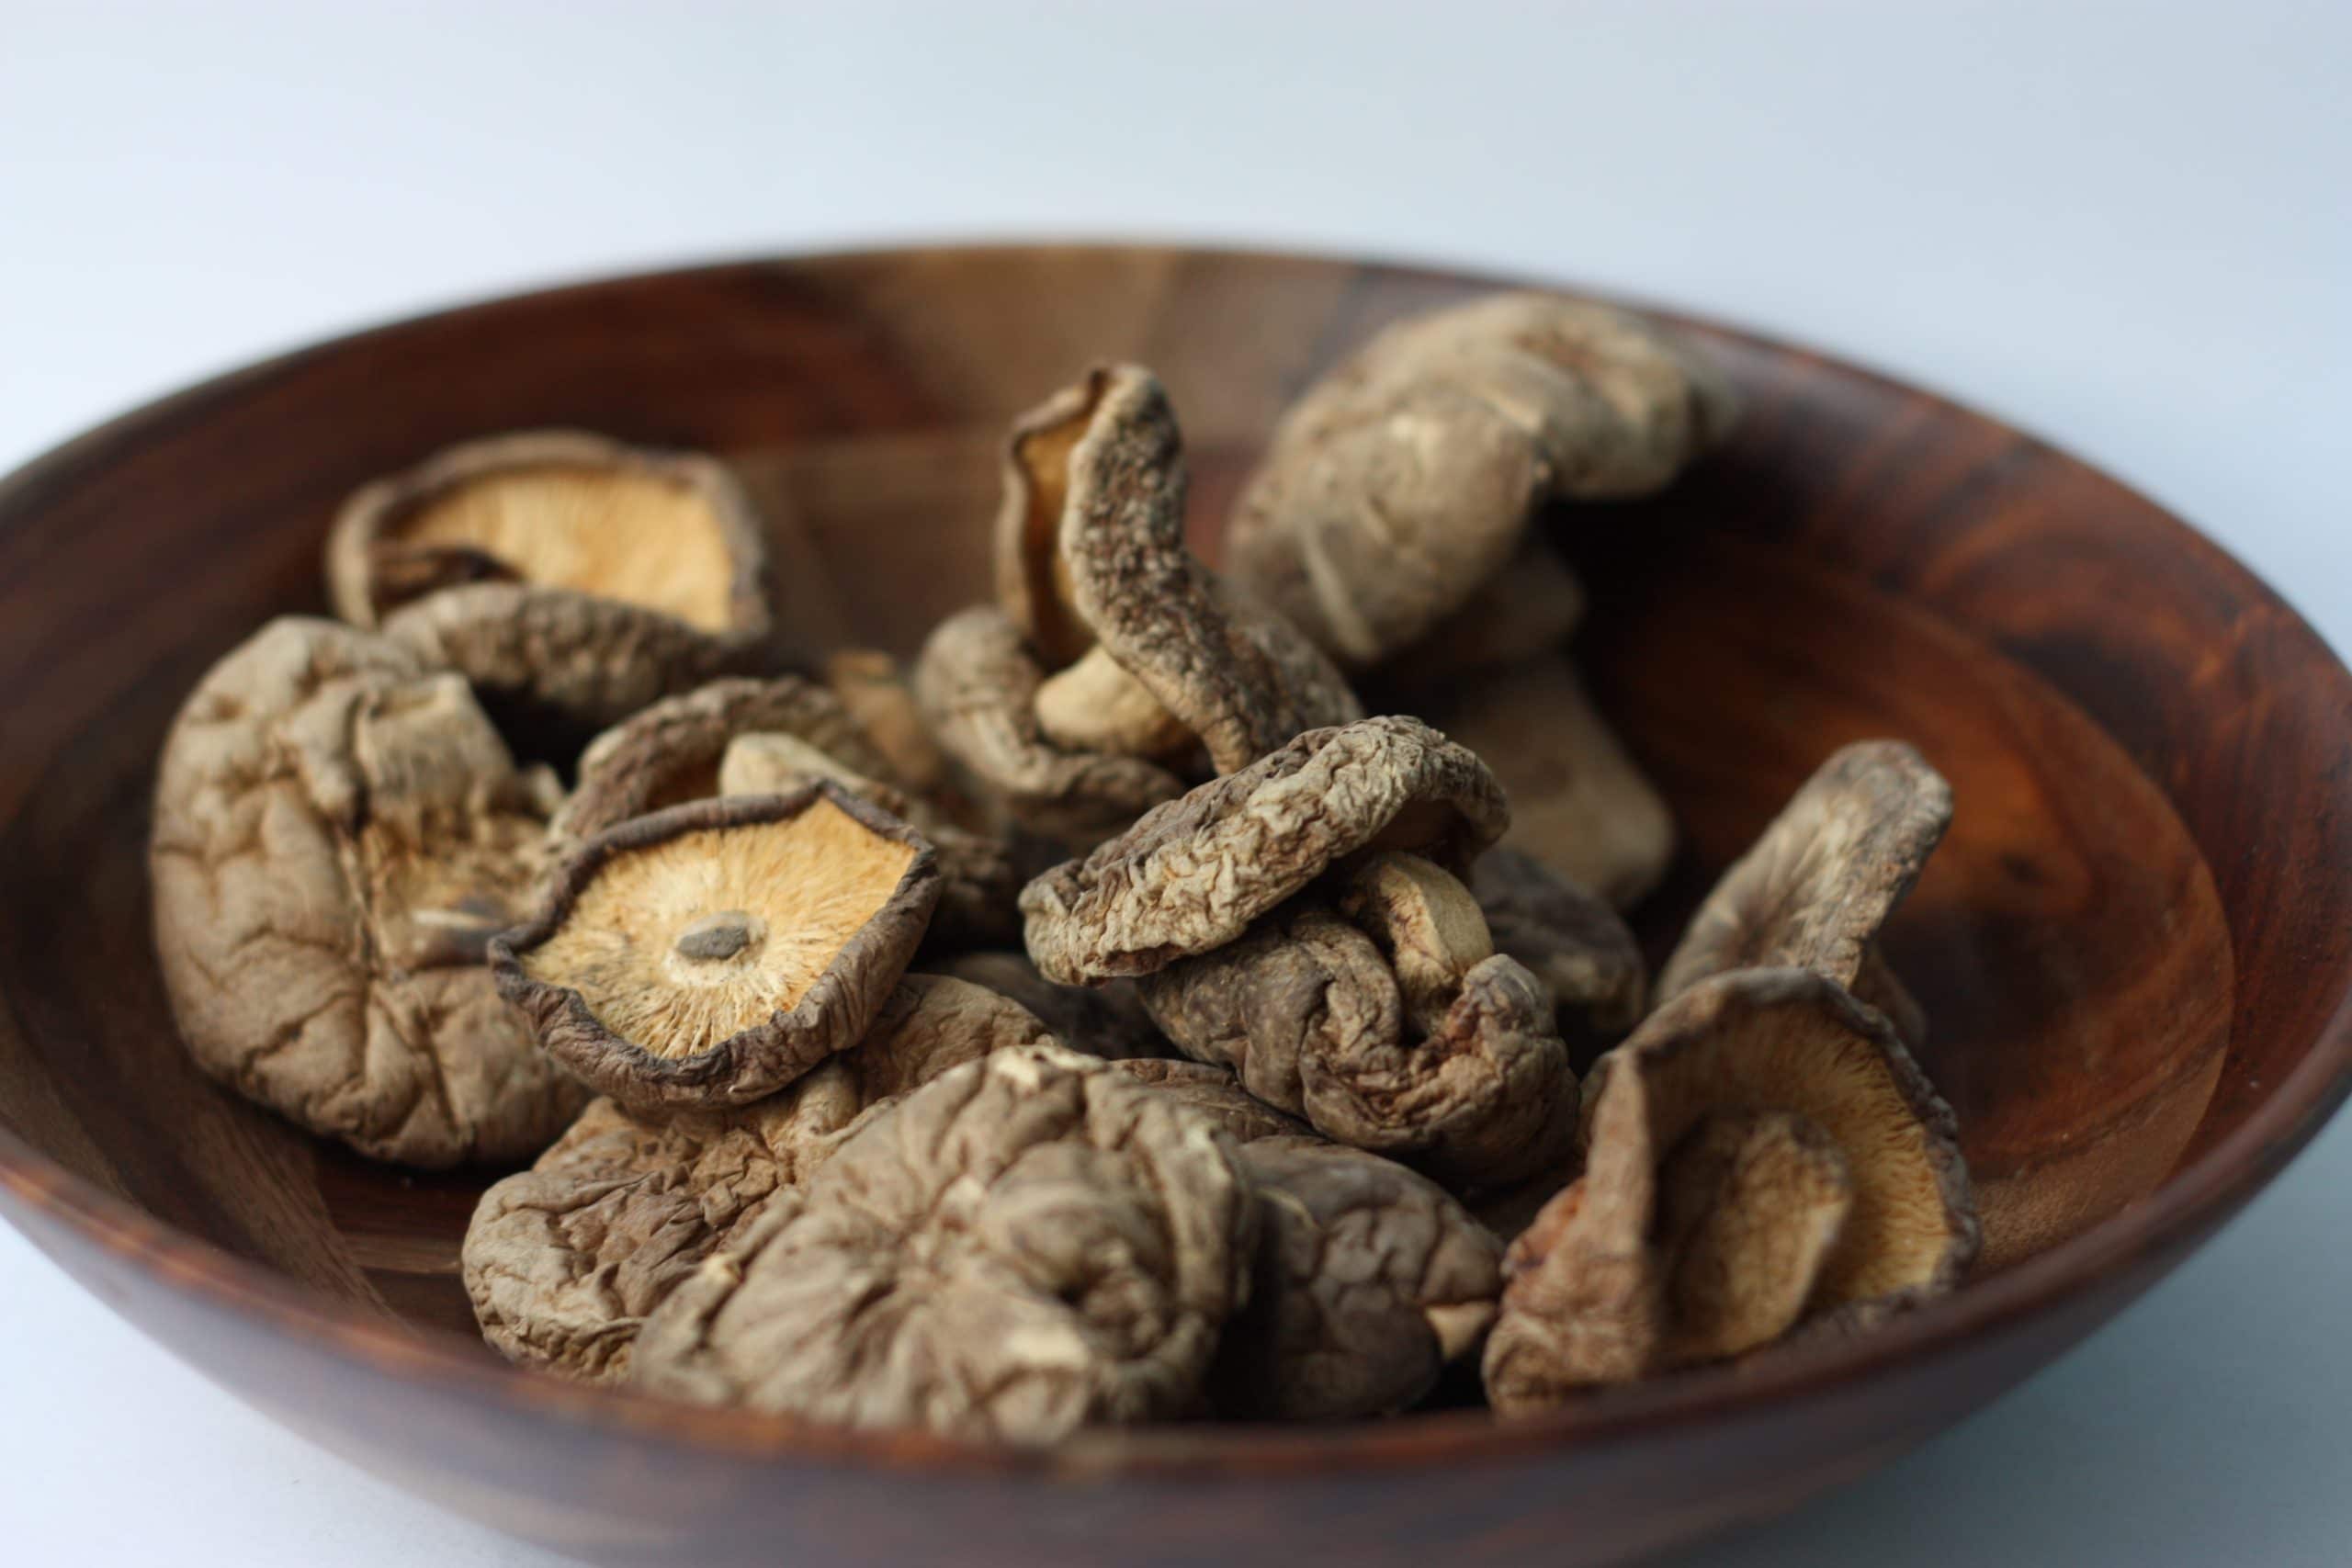 houby shiitake